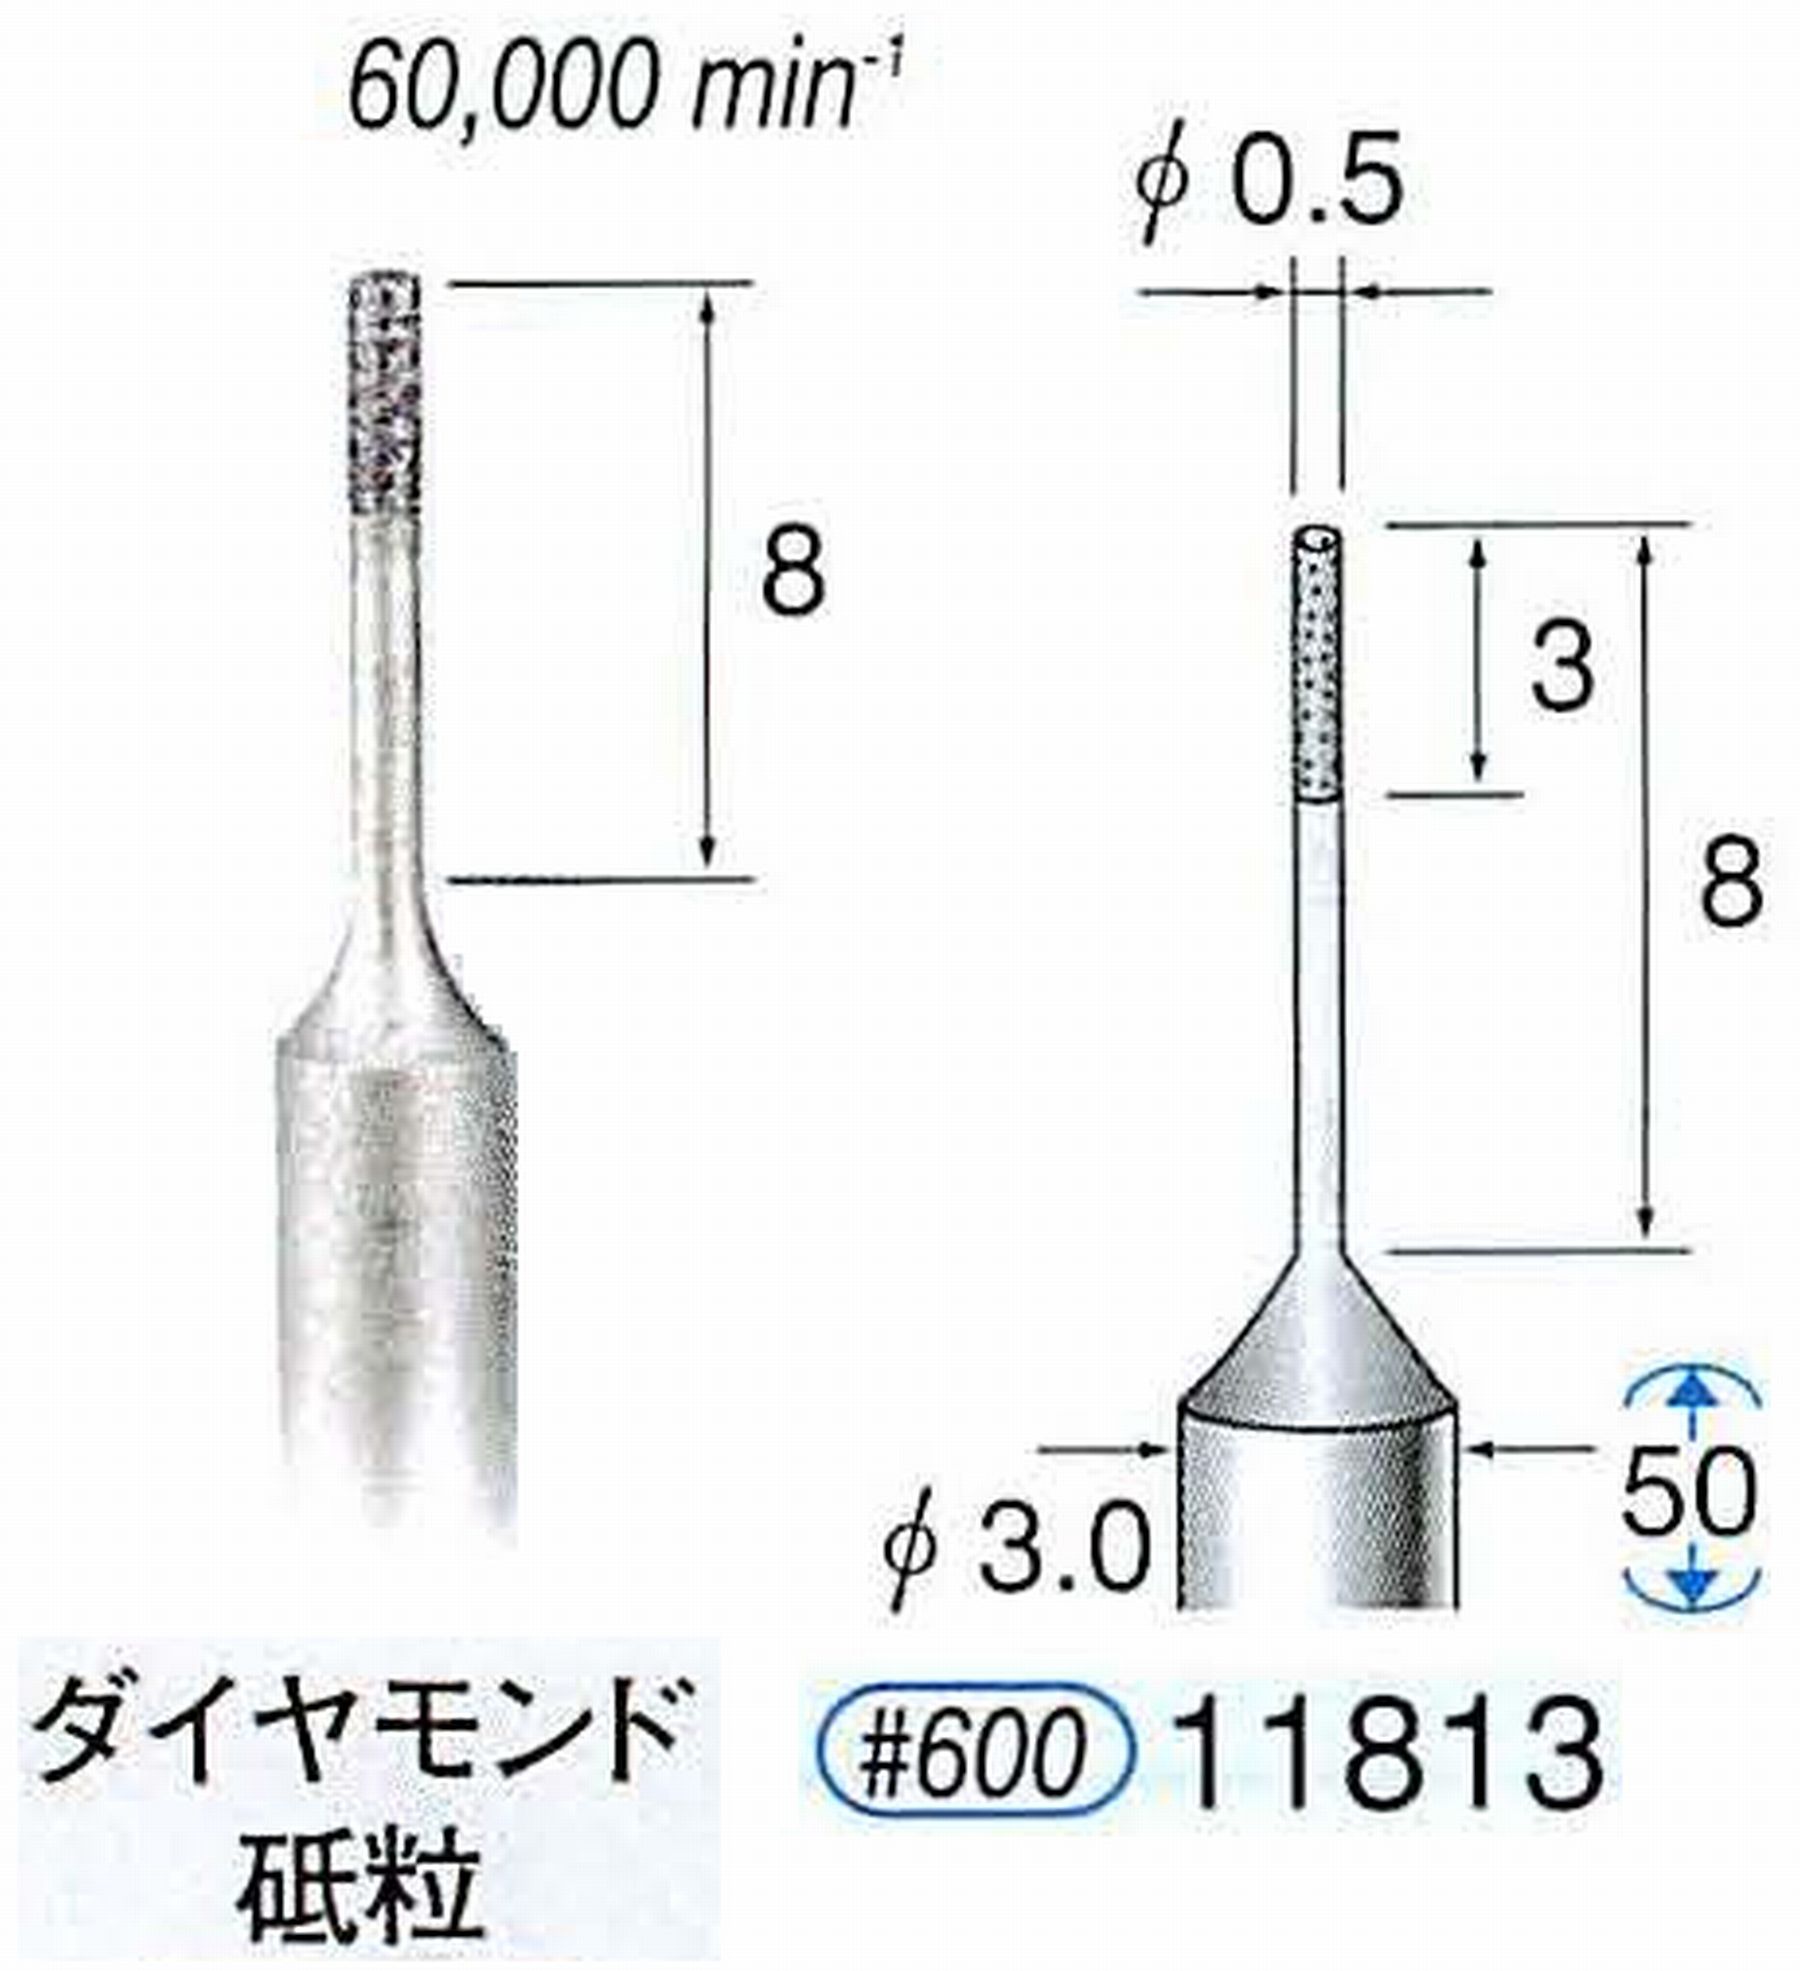 ナカニシ/NAKANISHI SP電着ダイヤモンド ダイヤモンド砥粒 軸径(シャンク)φ3.0mm 11813